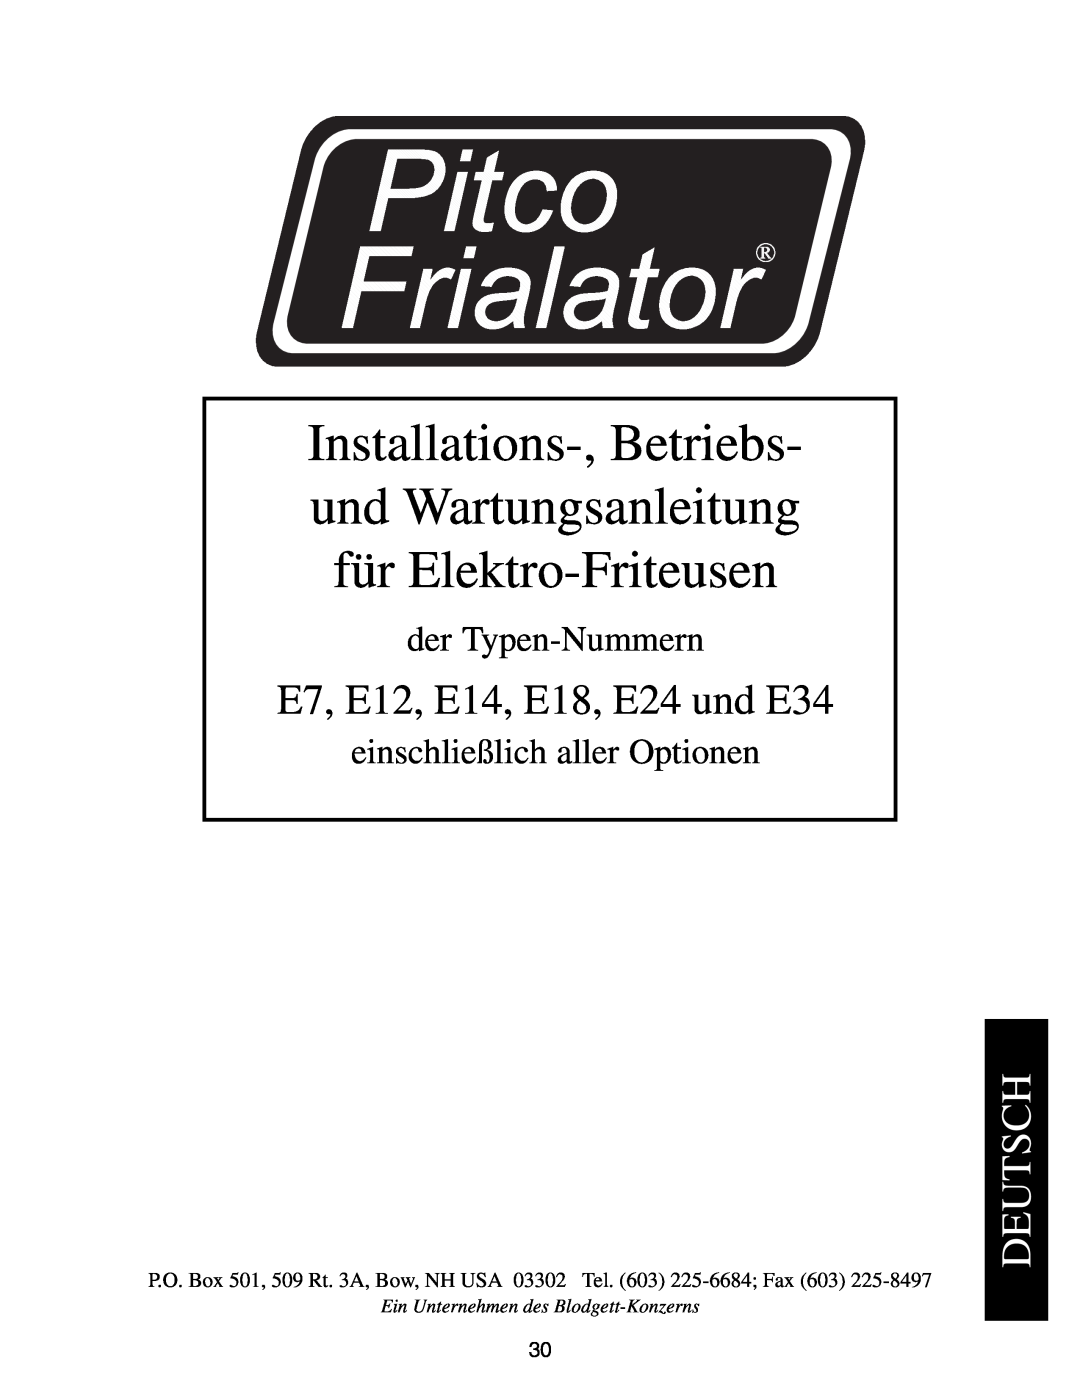 Pitco Frialator manual Deutsch, der Typen-Nummern, einschließlich aller Optionen, E7, E12, E14, E18, E24 und E34 